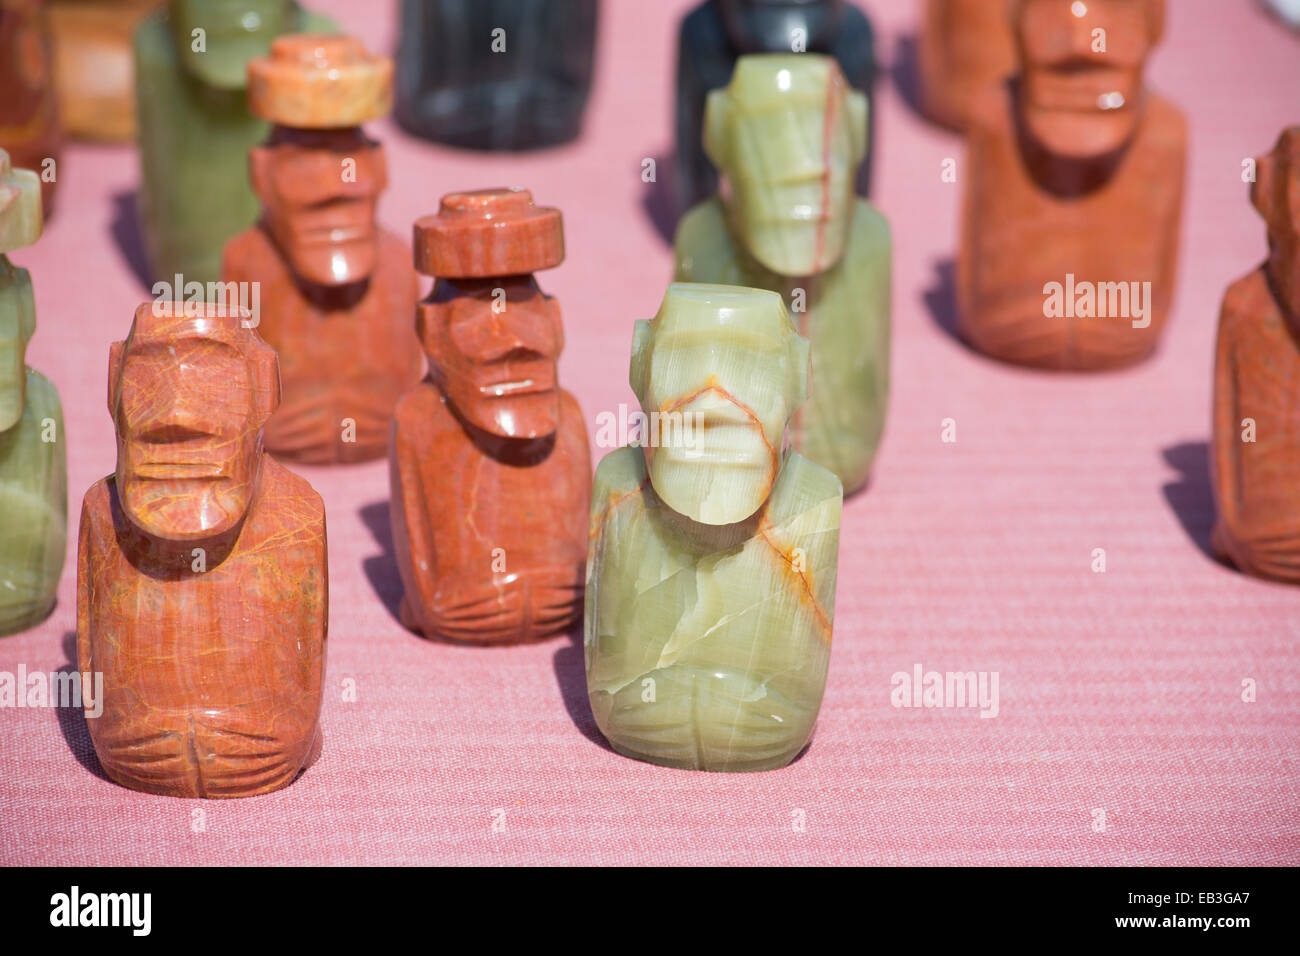 Le Chili, l'île de Pâques ou Rapa Nui. Souvenirs typiques de l'artisanat à vendre autour de l'île. Pierres de moi les chiffres. Banque D'Images